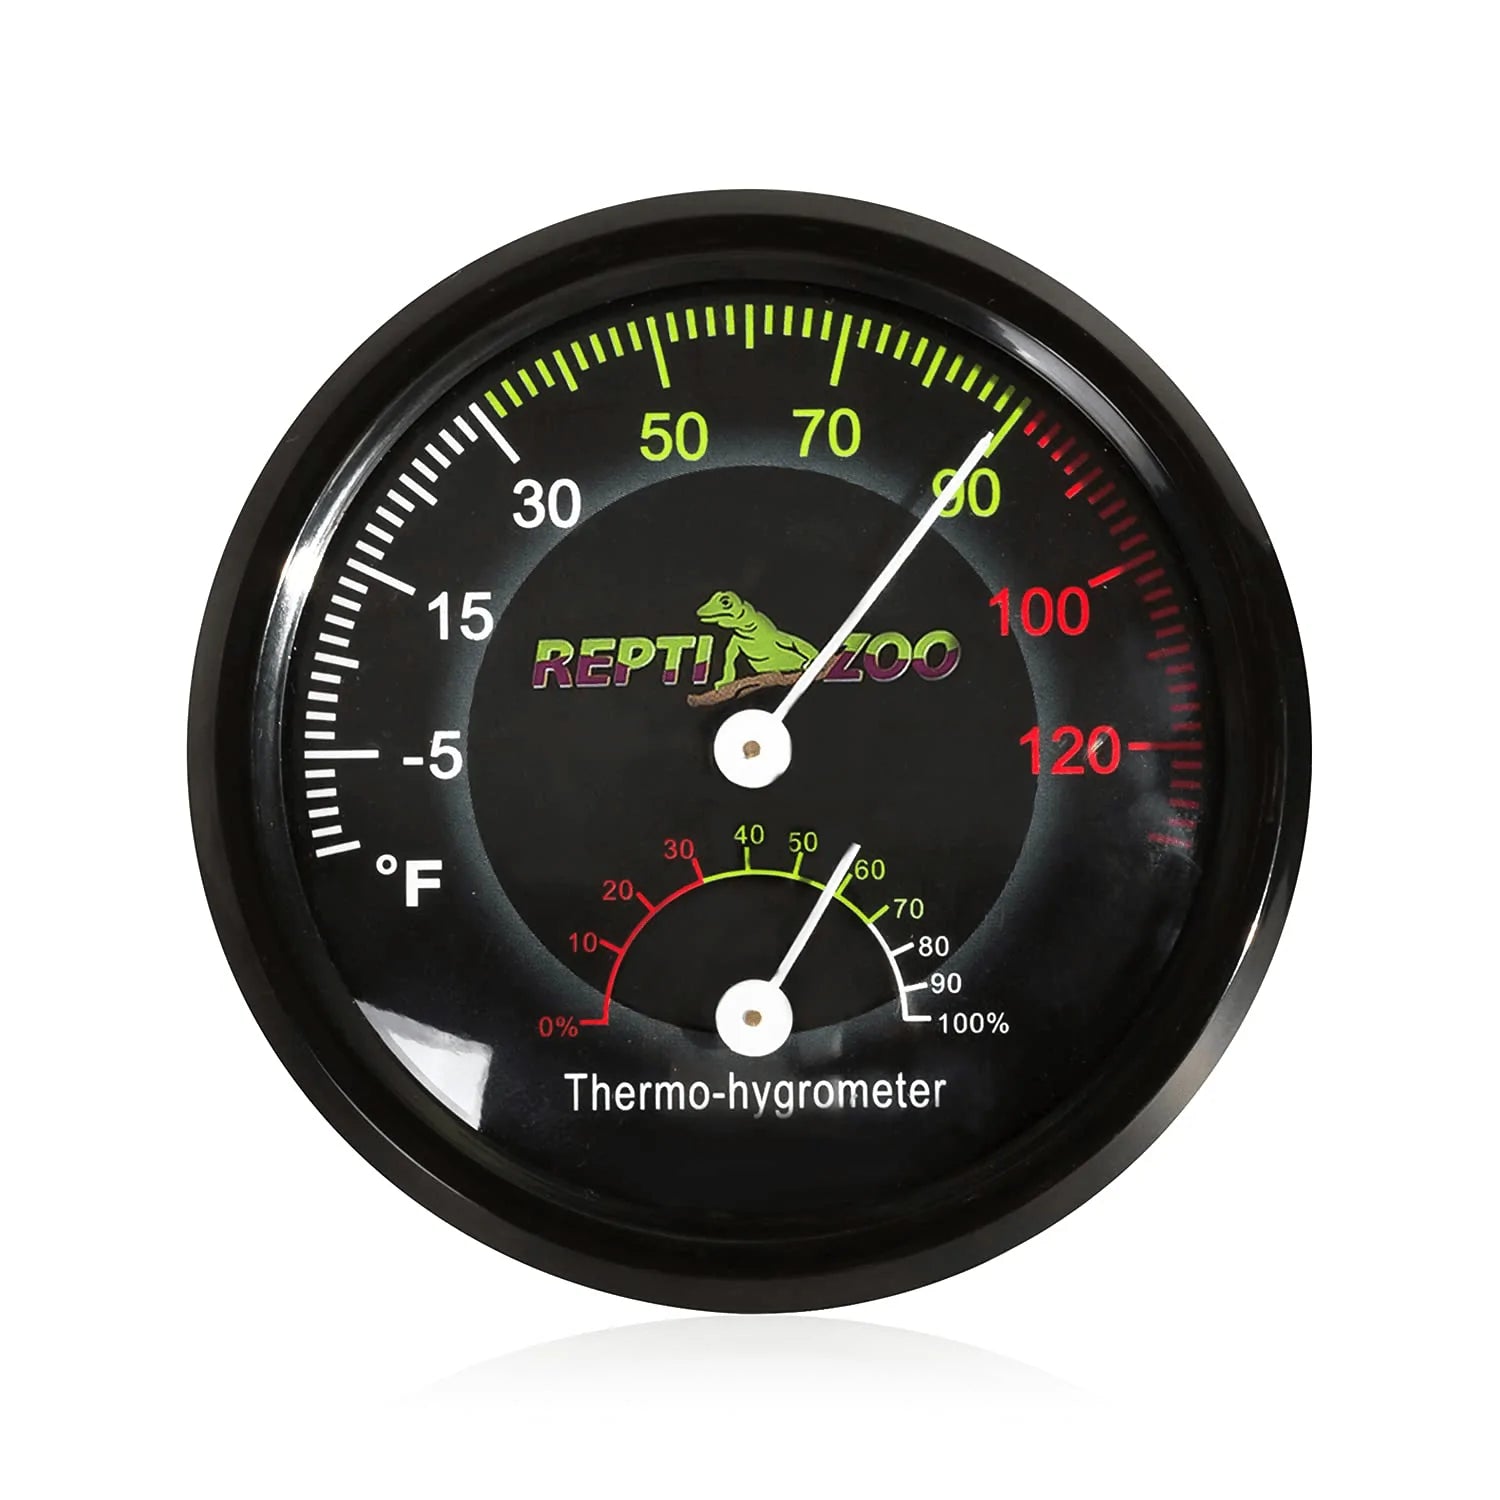 LXSZRPH Reptile Thermometer Hygrometer HD LCD Reptile Tank Digital